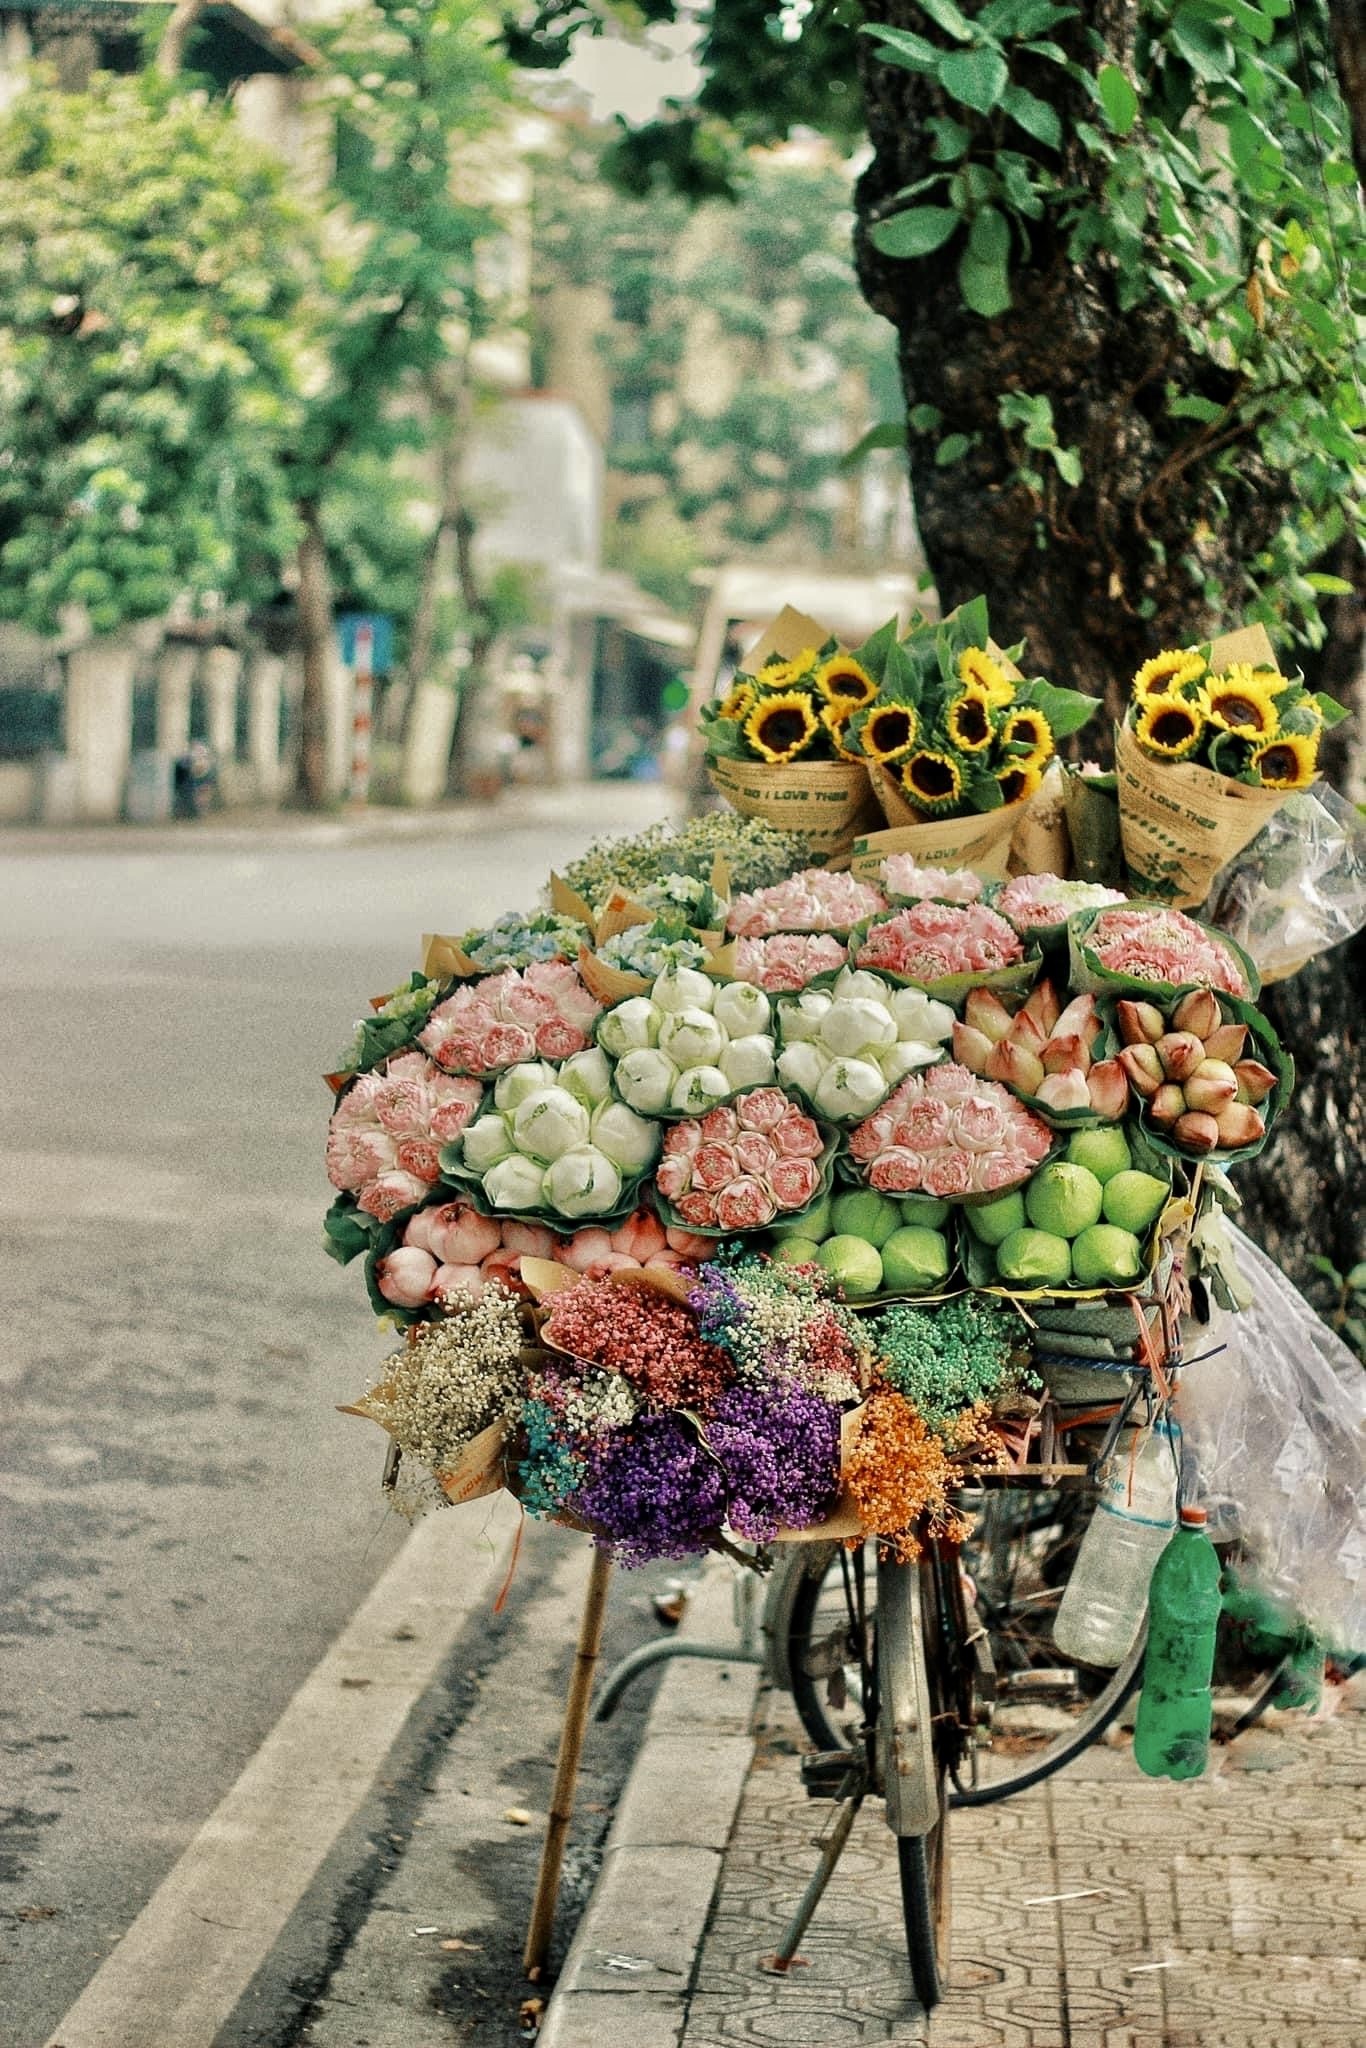 Xe hàng hoa đẹp ngỡ ngàng giữa phố phường Hà Nội - Ảnh 5.